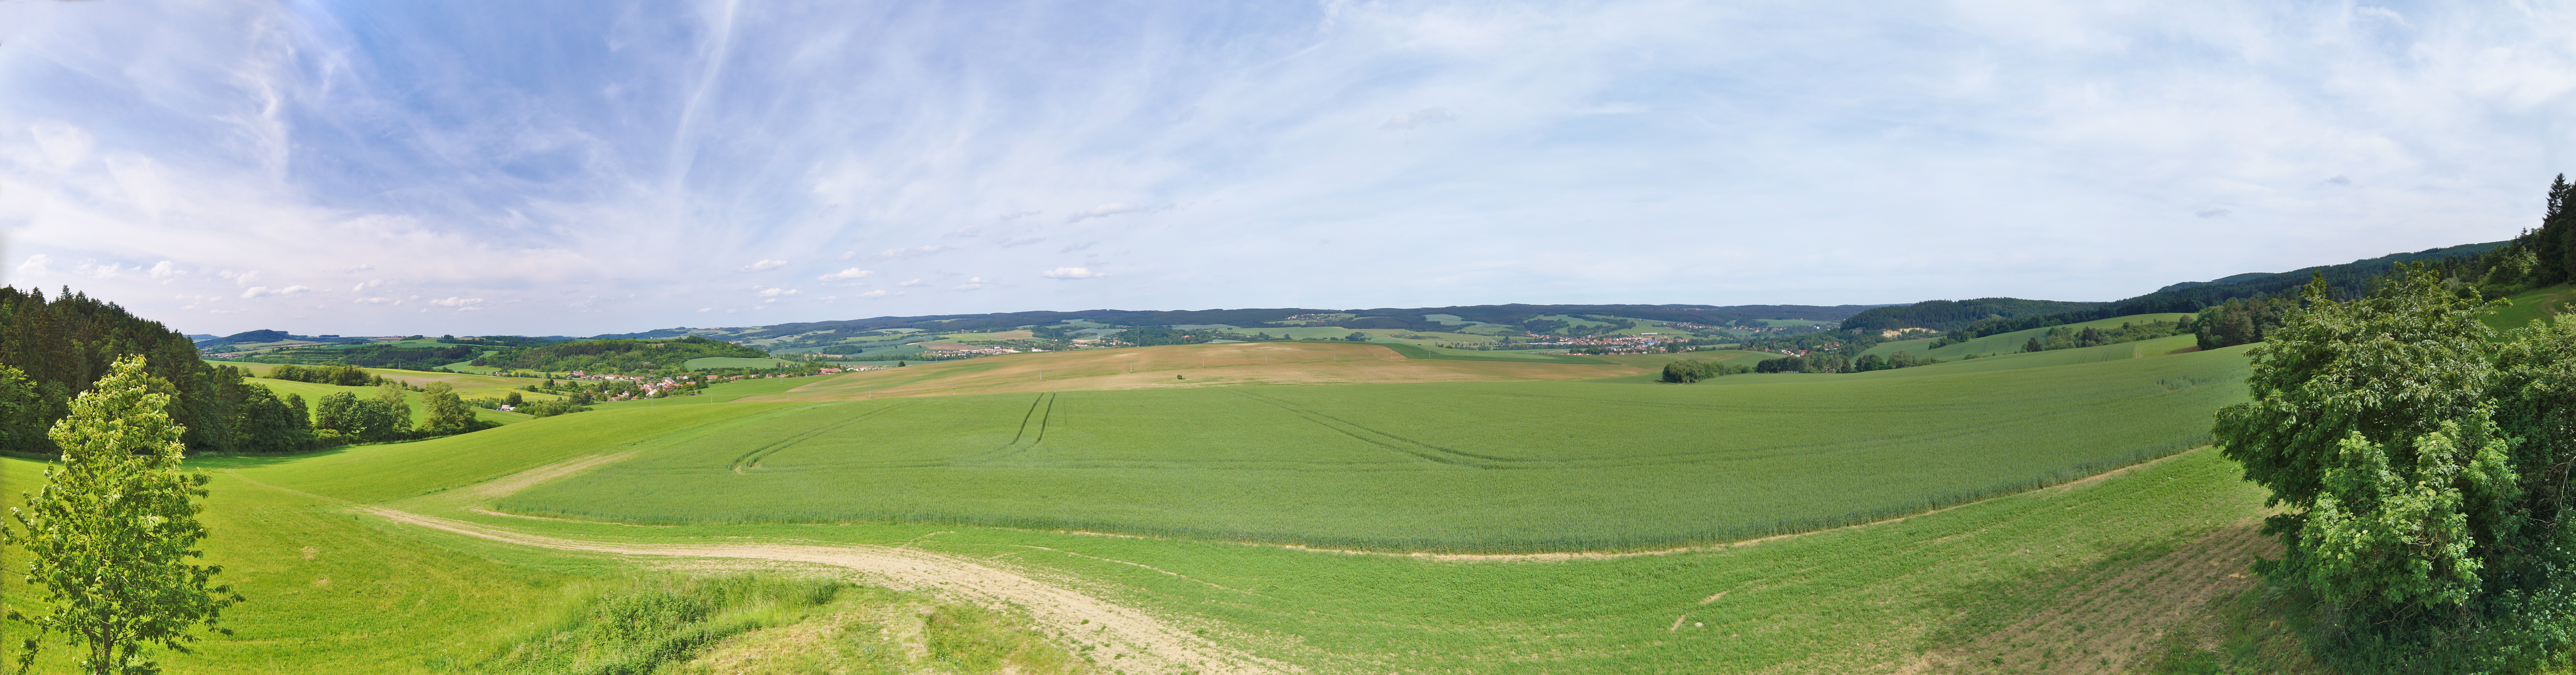 Panoramatický výhled na východ z rozhledny Spešov, okres Blansko.jpg